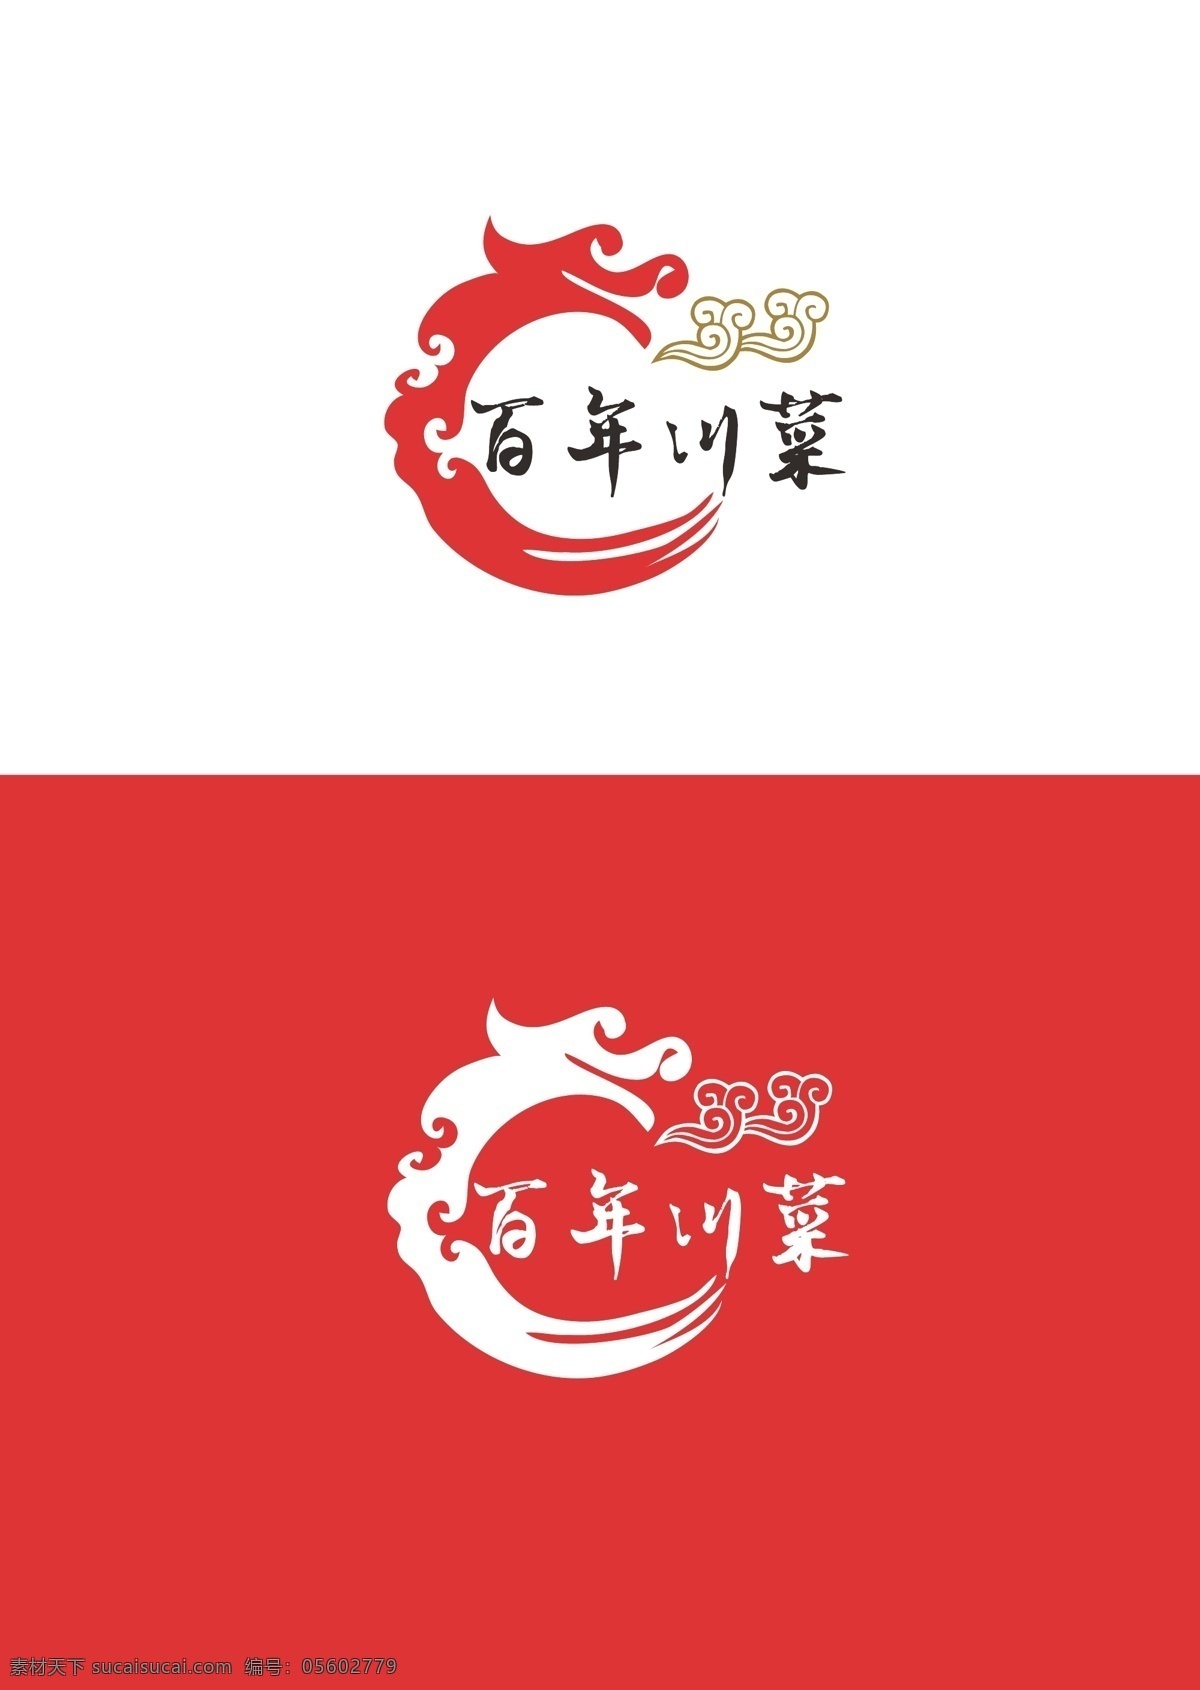 川菜标识设计 川菜 标识 简约 现代 标志图标 其他图标